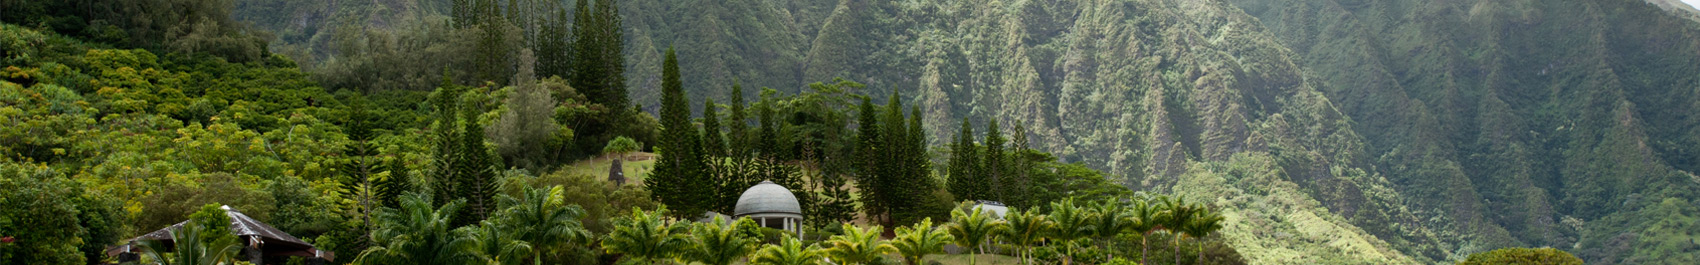 Valley Temple Hawaii